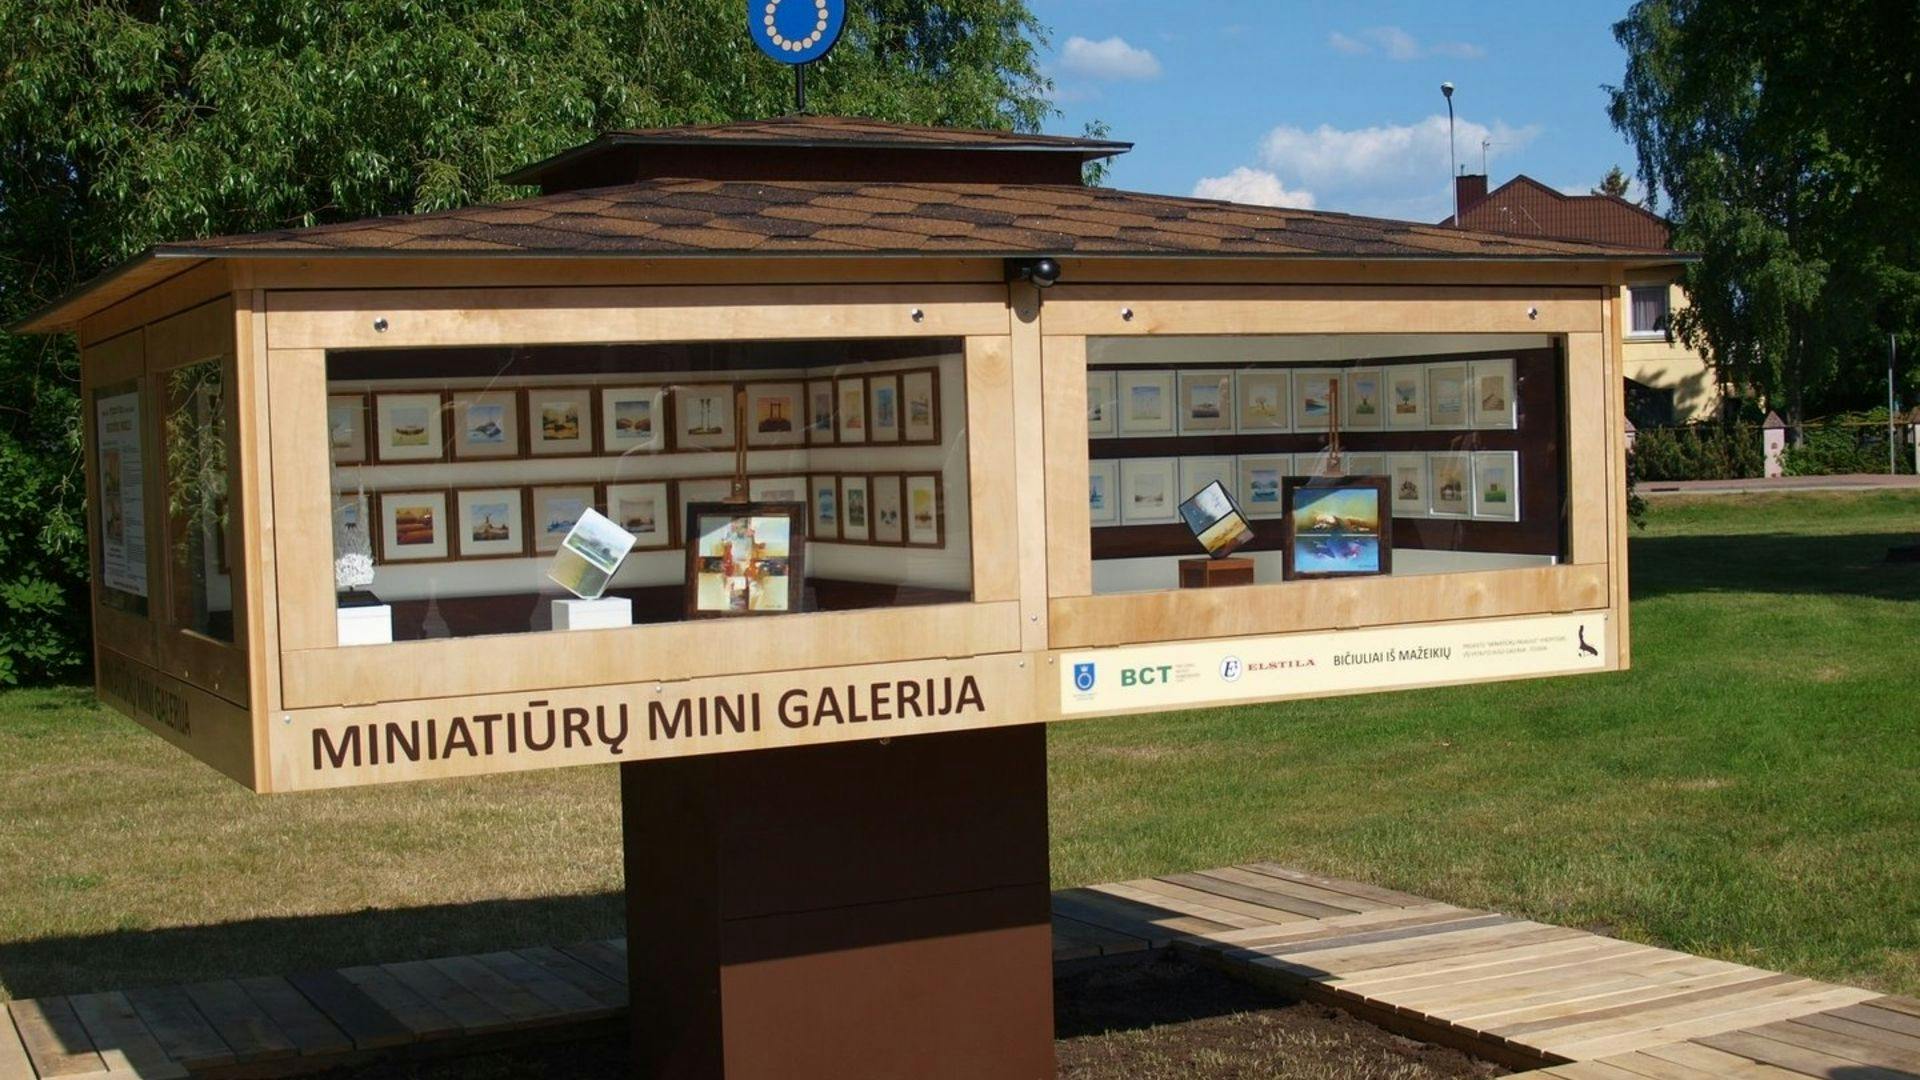 Miniatiūrų Mini Galerija